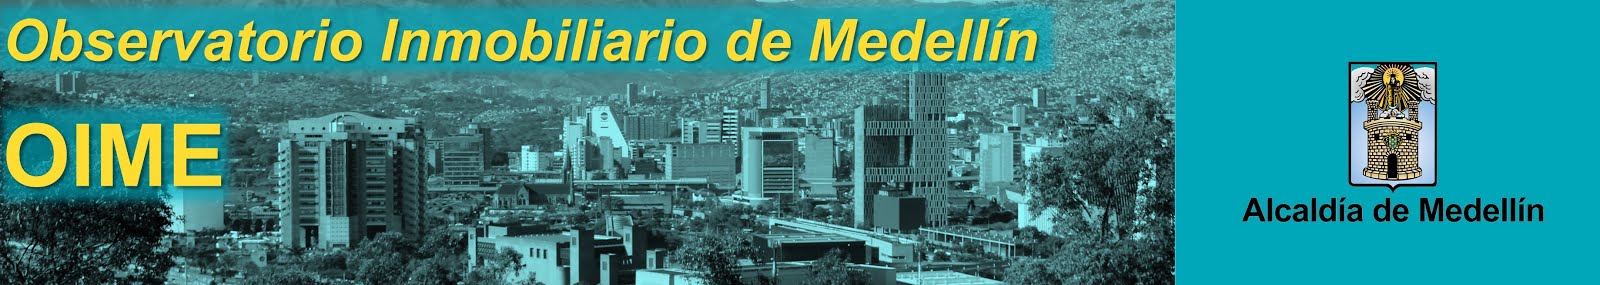 Observatorio Inmobiliario de Medellín